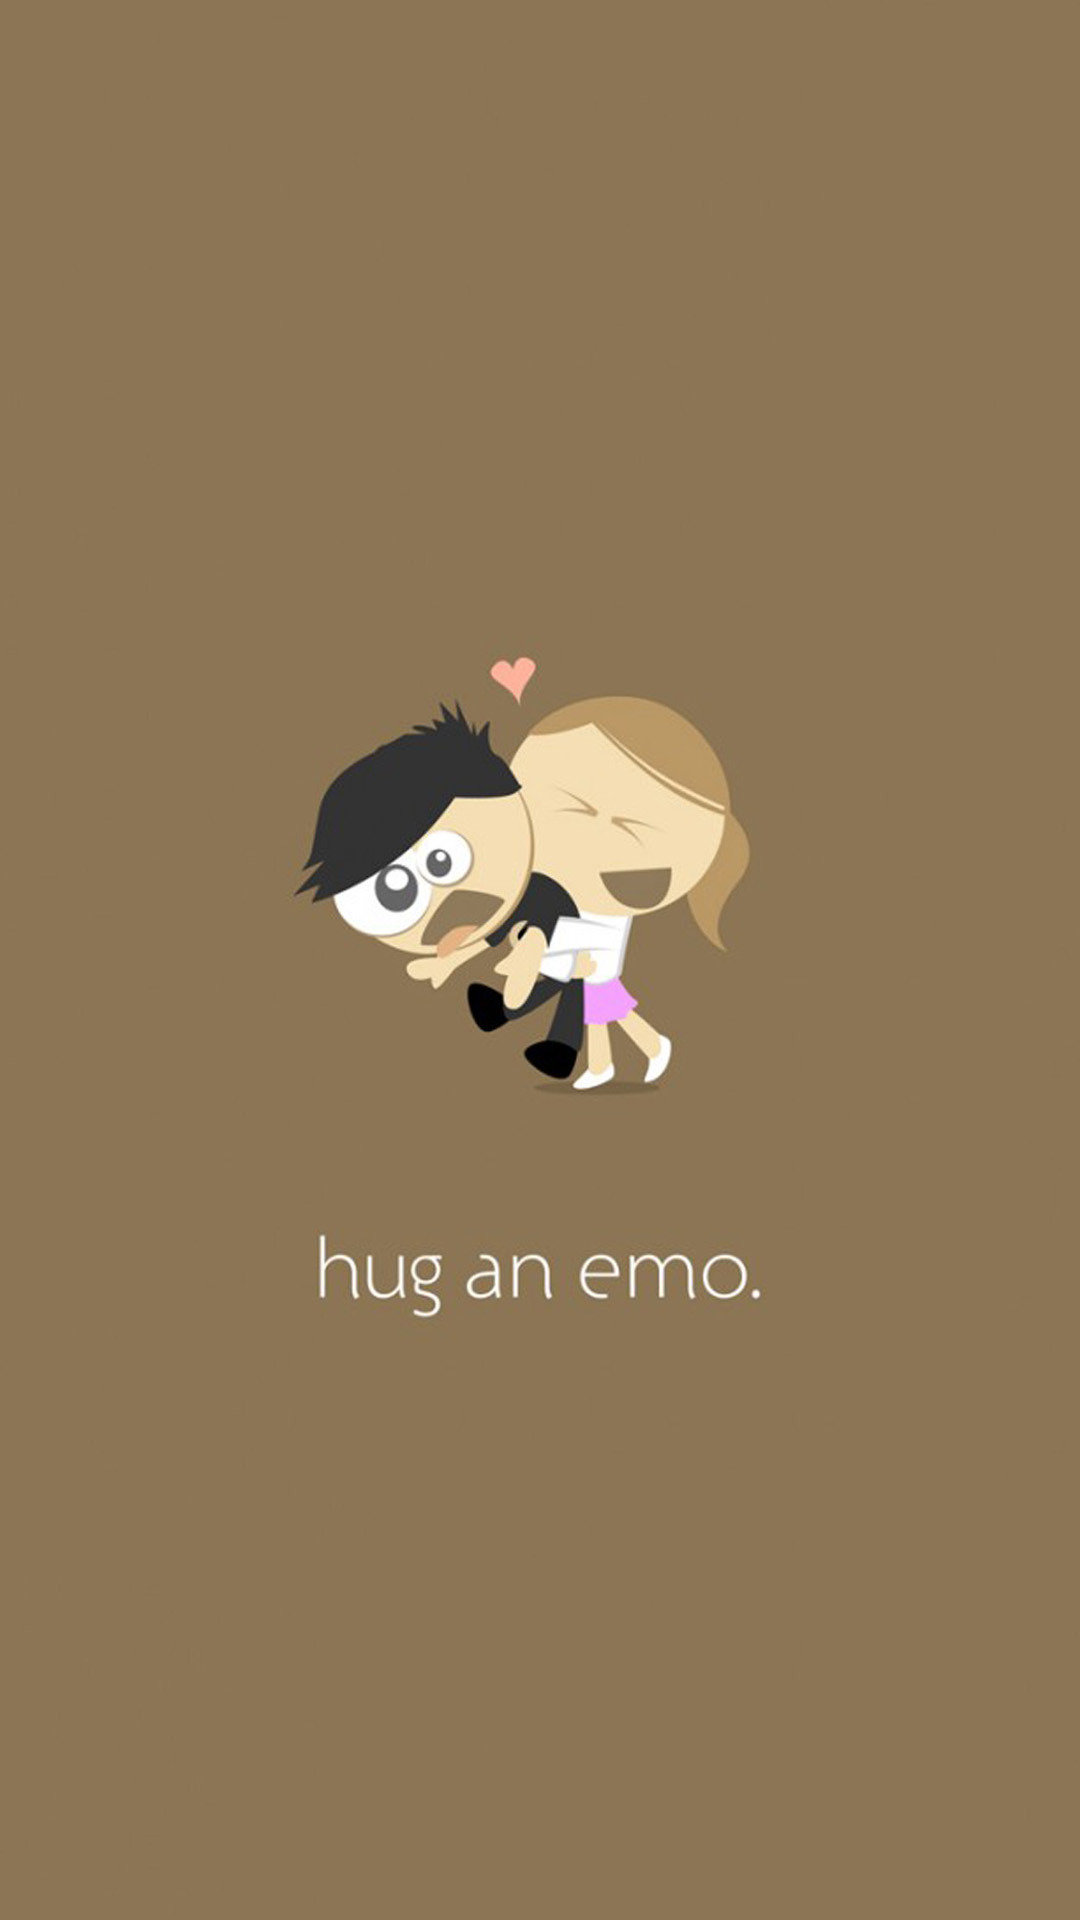 1080x1920 Hug An Emo